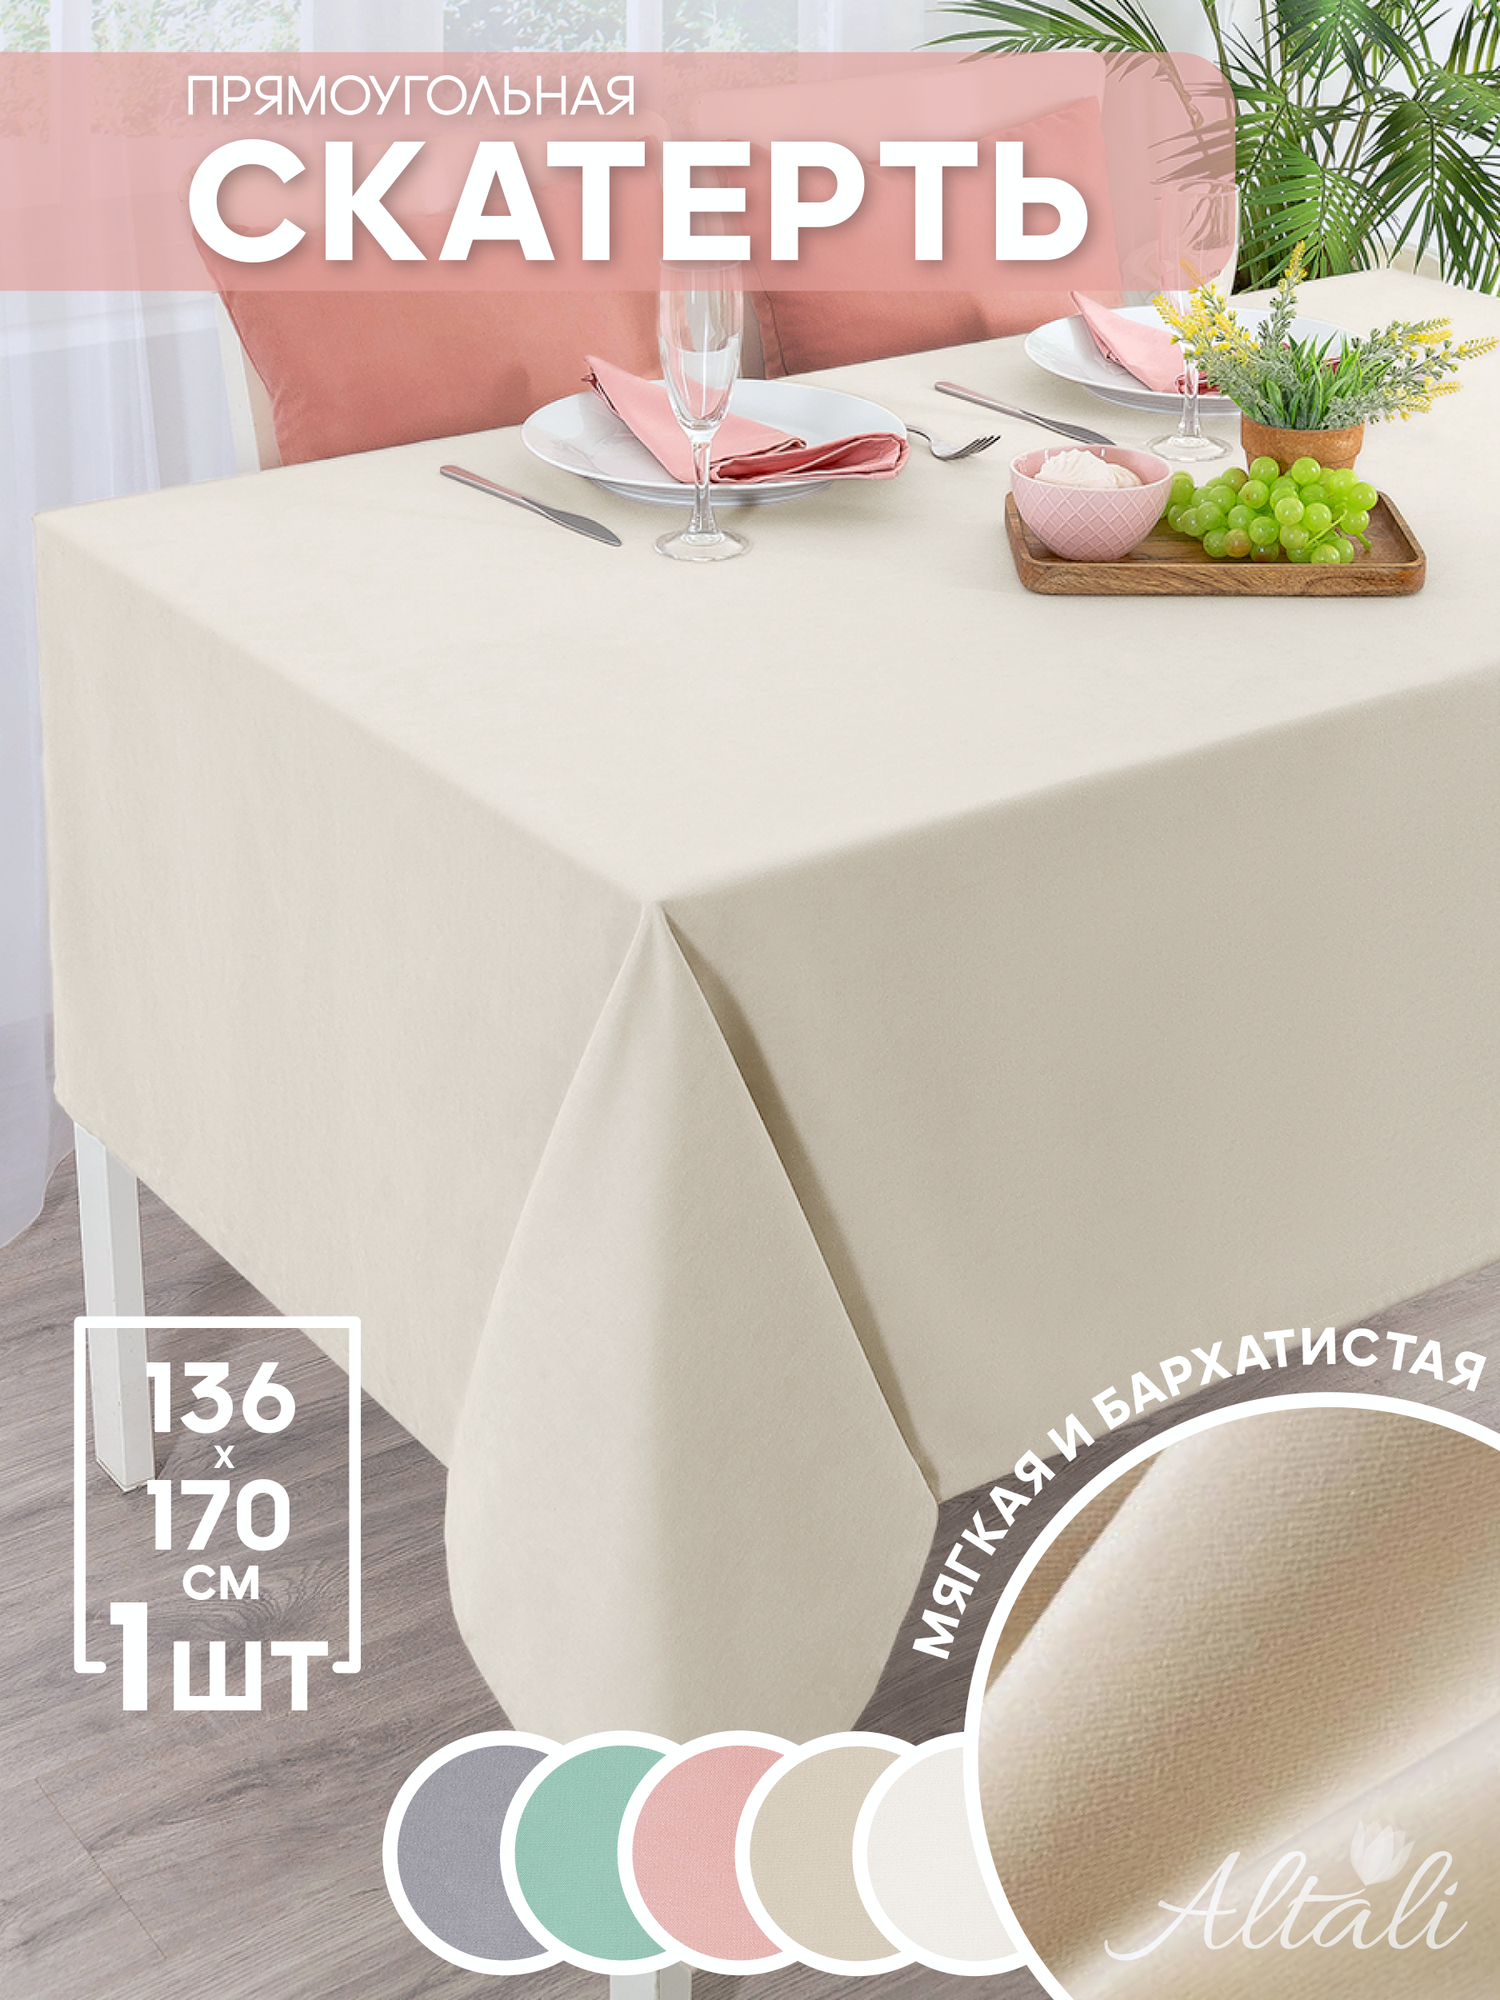 Скатерть кухонная прямоугольная на стол 136x170 Ваниль / ткань велюр / для кухни, дома, дачи /Altali